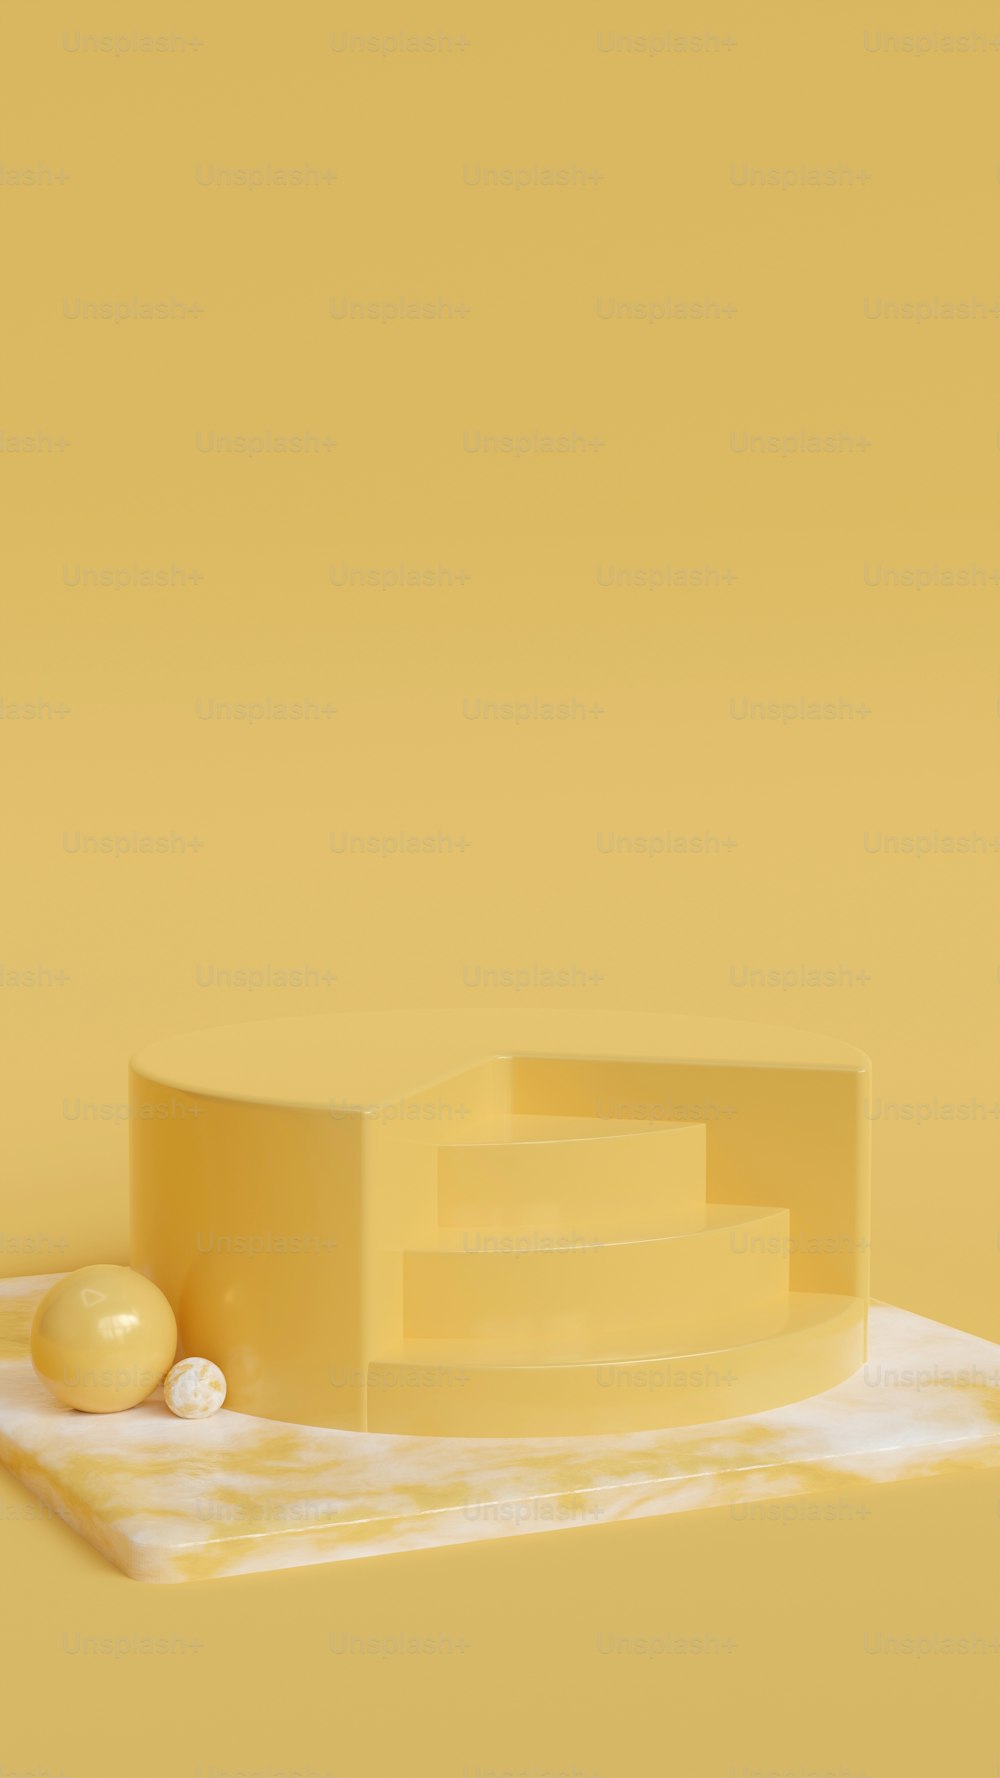 테이블 위에 앉아있는 치즈 조각